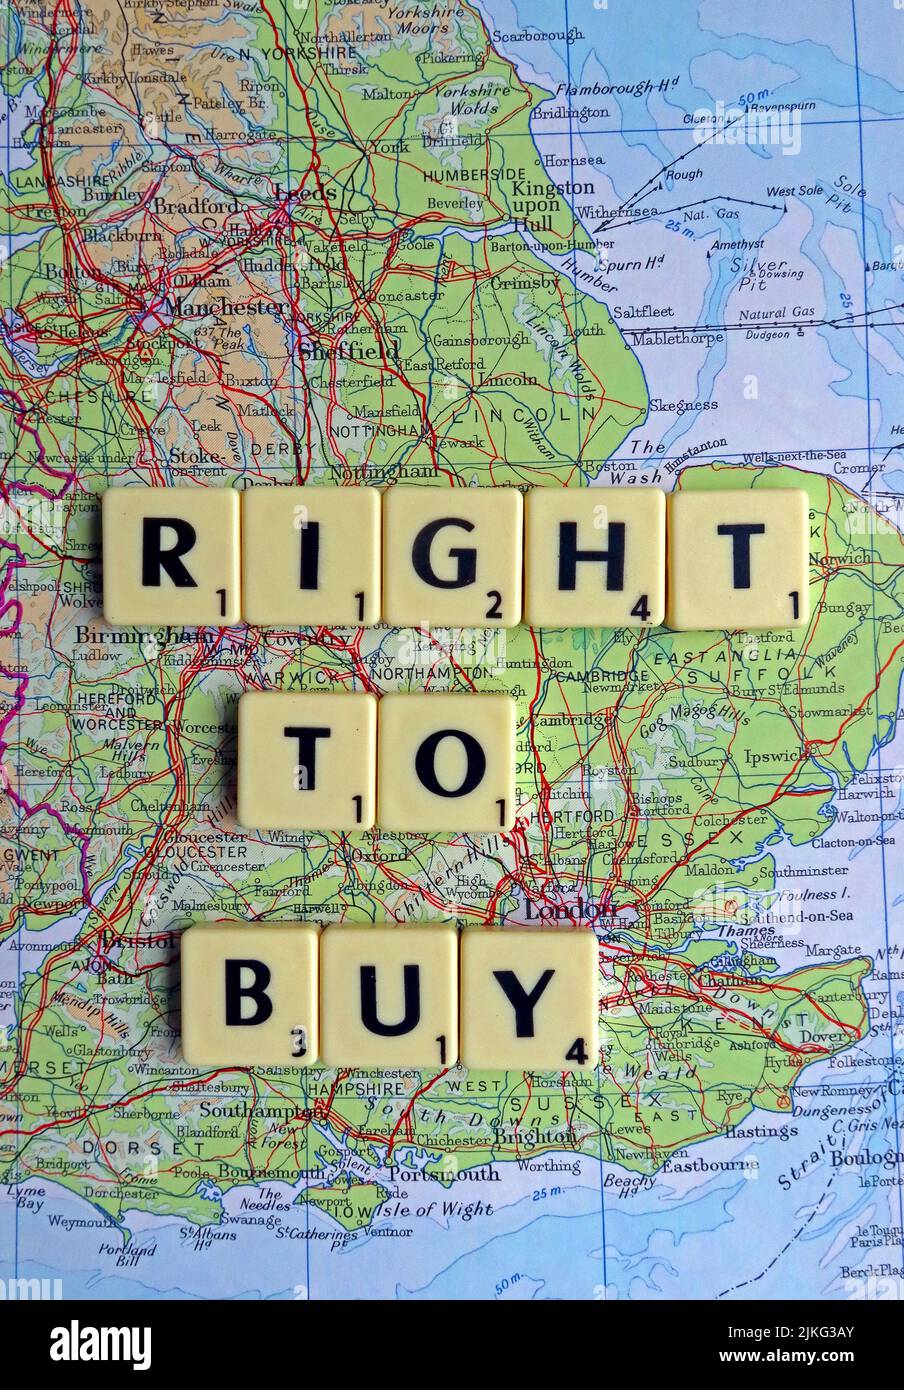 RTB, Right to Buy, écrit en lettres Scrabble sur une carte de l'Angleterre Banque D'Images